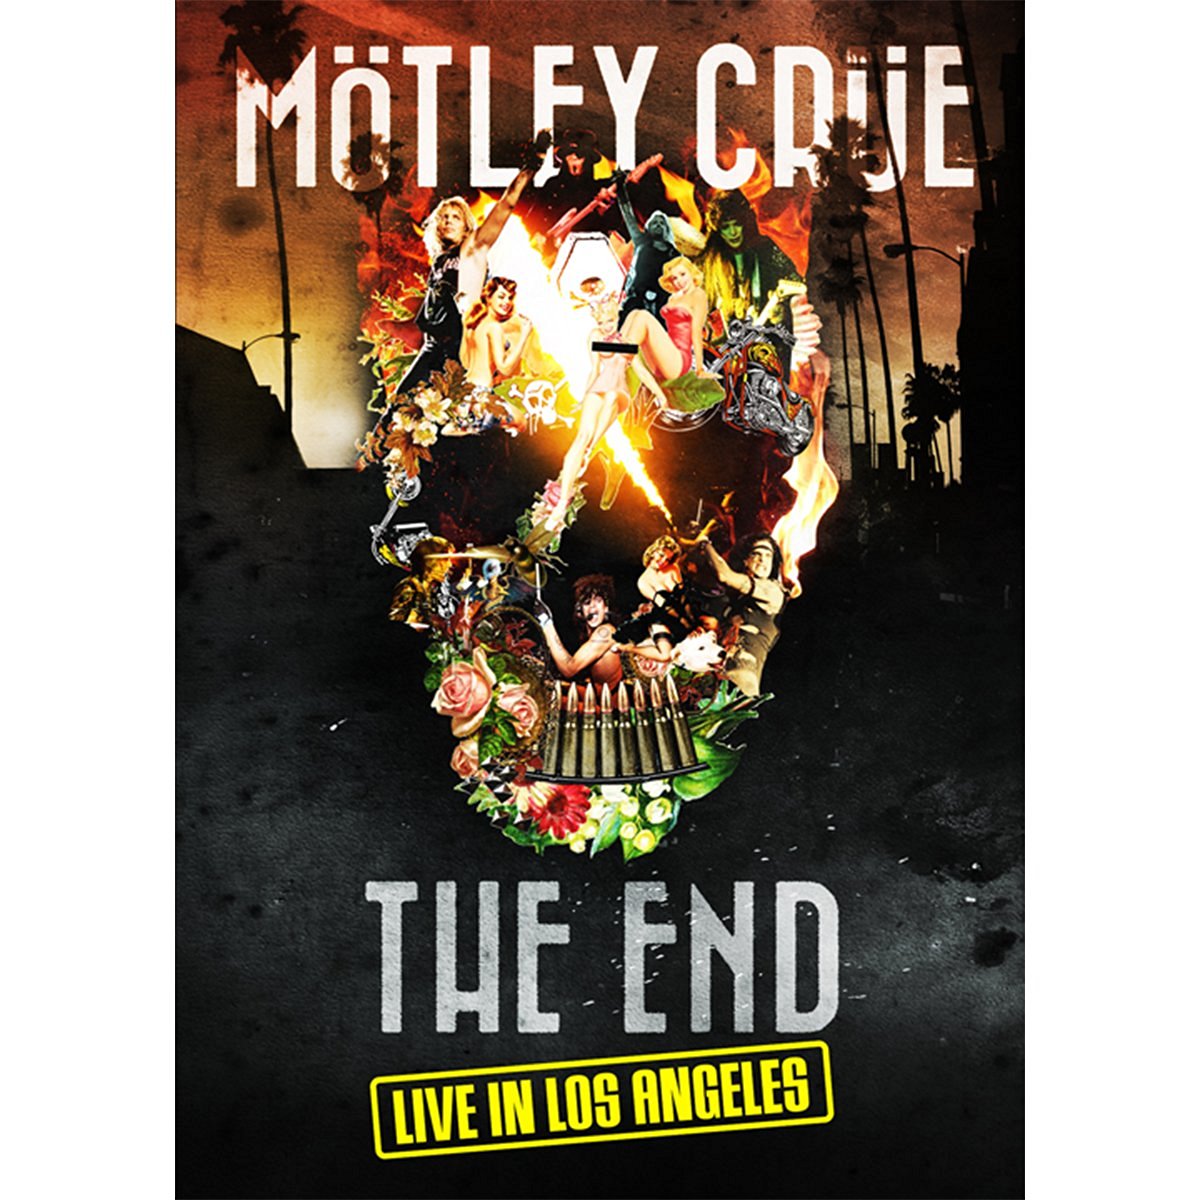 楽天楽天ブックス「THE END」ラスト・ライヴ・イン・ロサンゼルス 2015年12月31日+劇場公開ドキュメンタリー映画「THE END」 [ モトリー・クルー ]